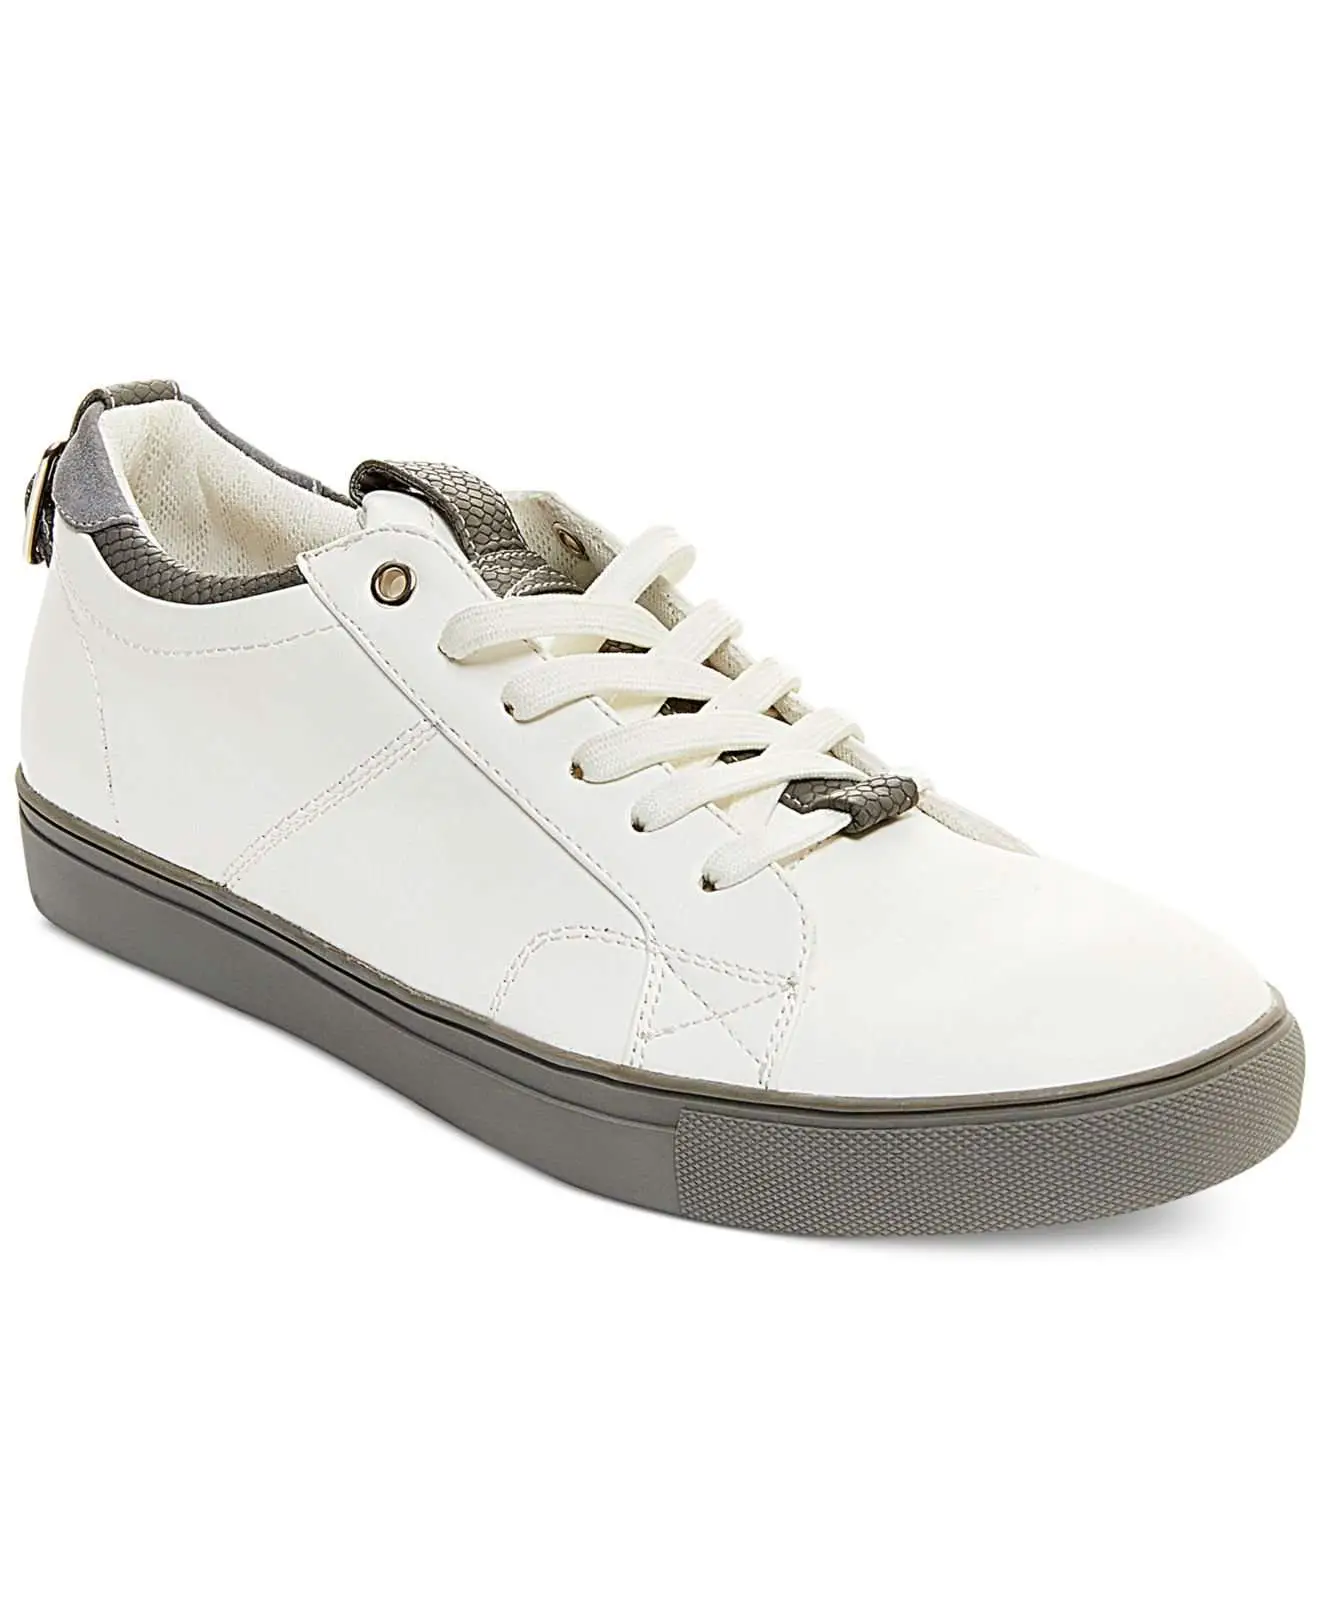 Steve Madden Copter Sneakers in White for Men